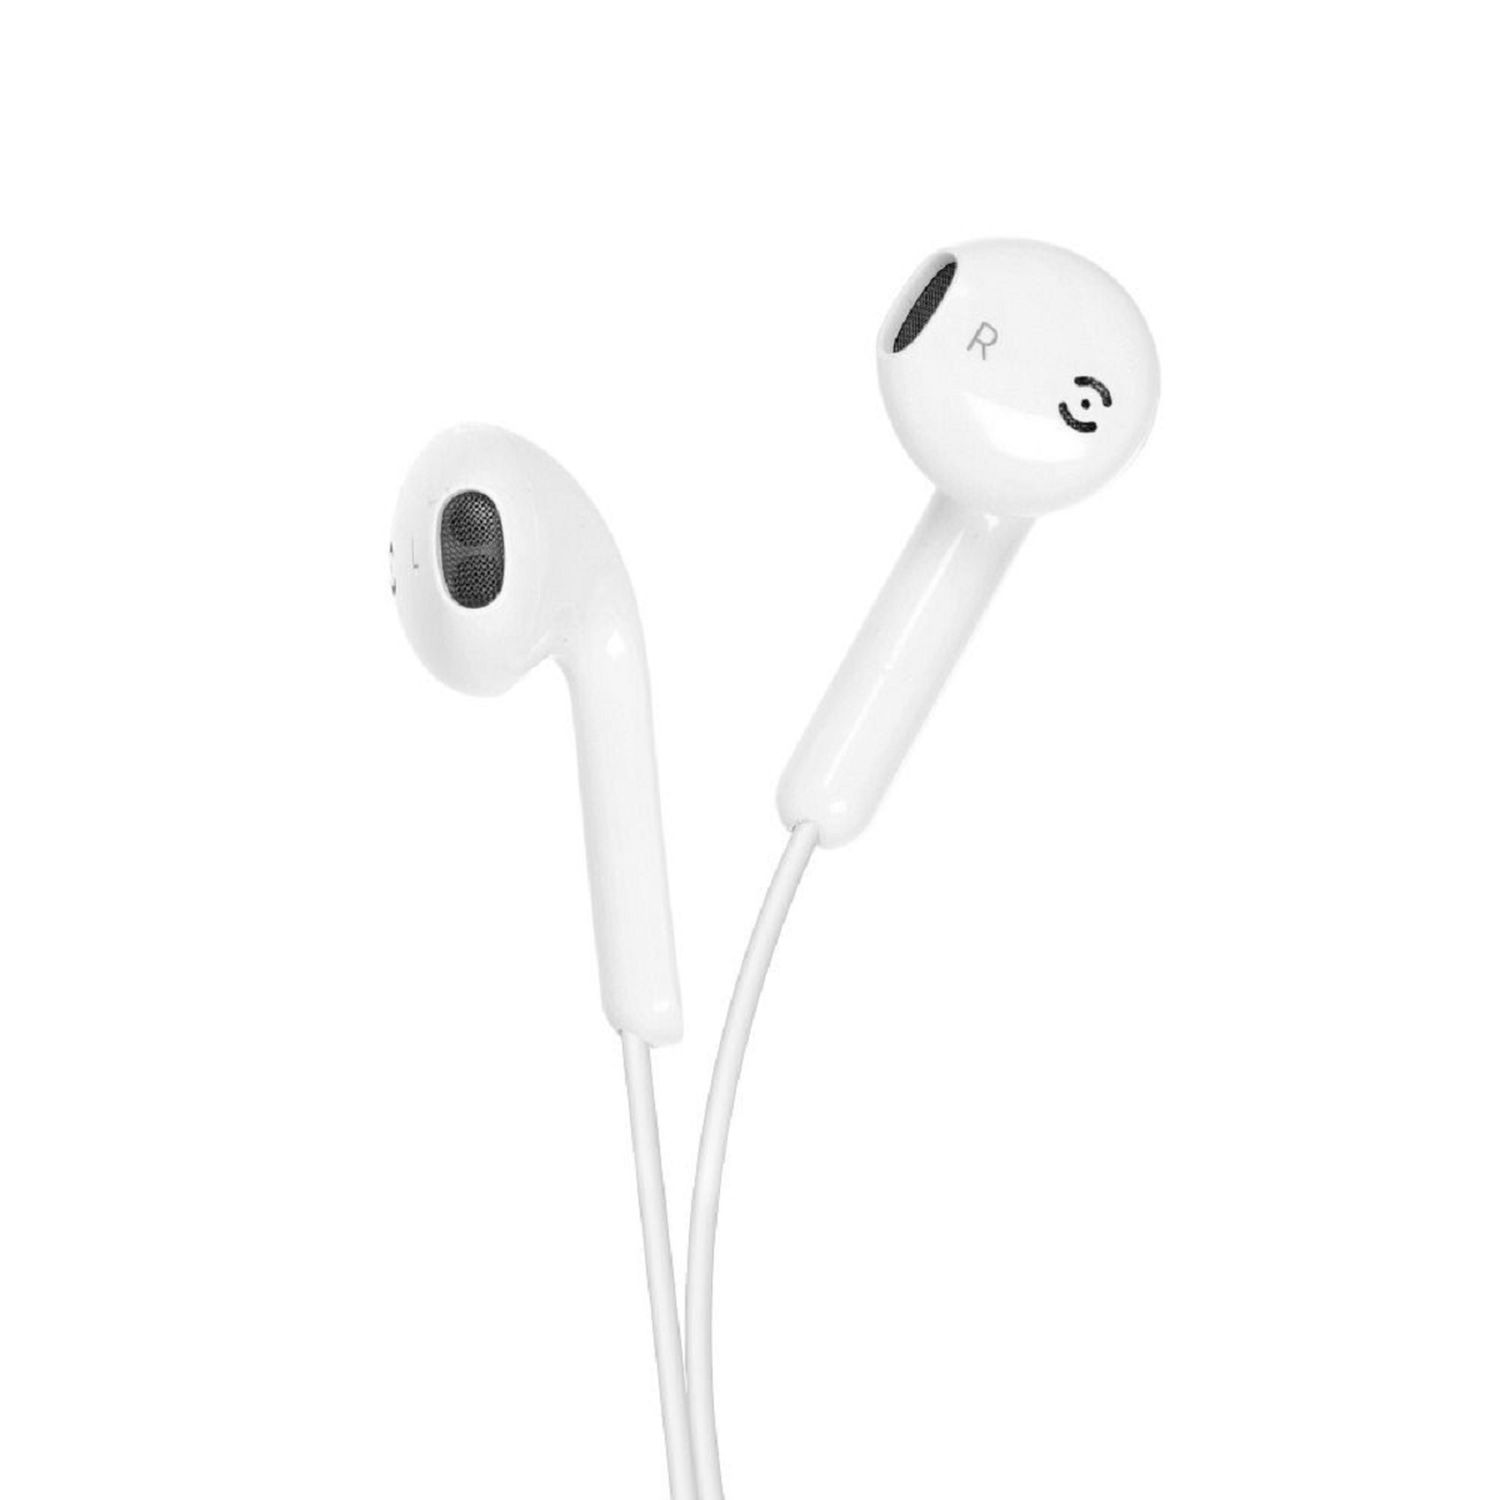 iPhone-Anschluss 8-pin, FORCELL In-ear Kopfhörer Weiß